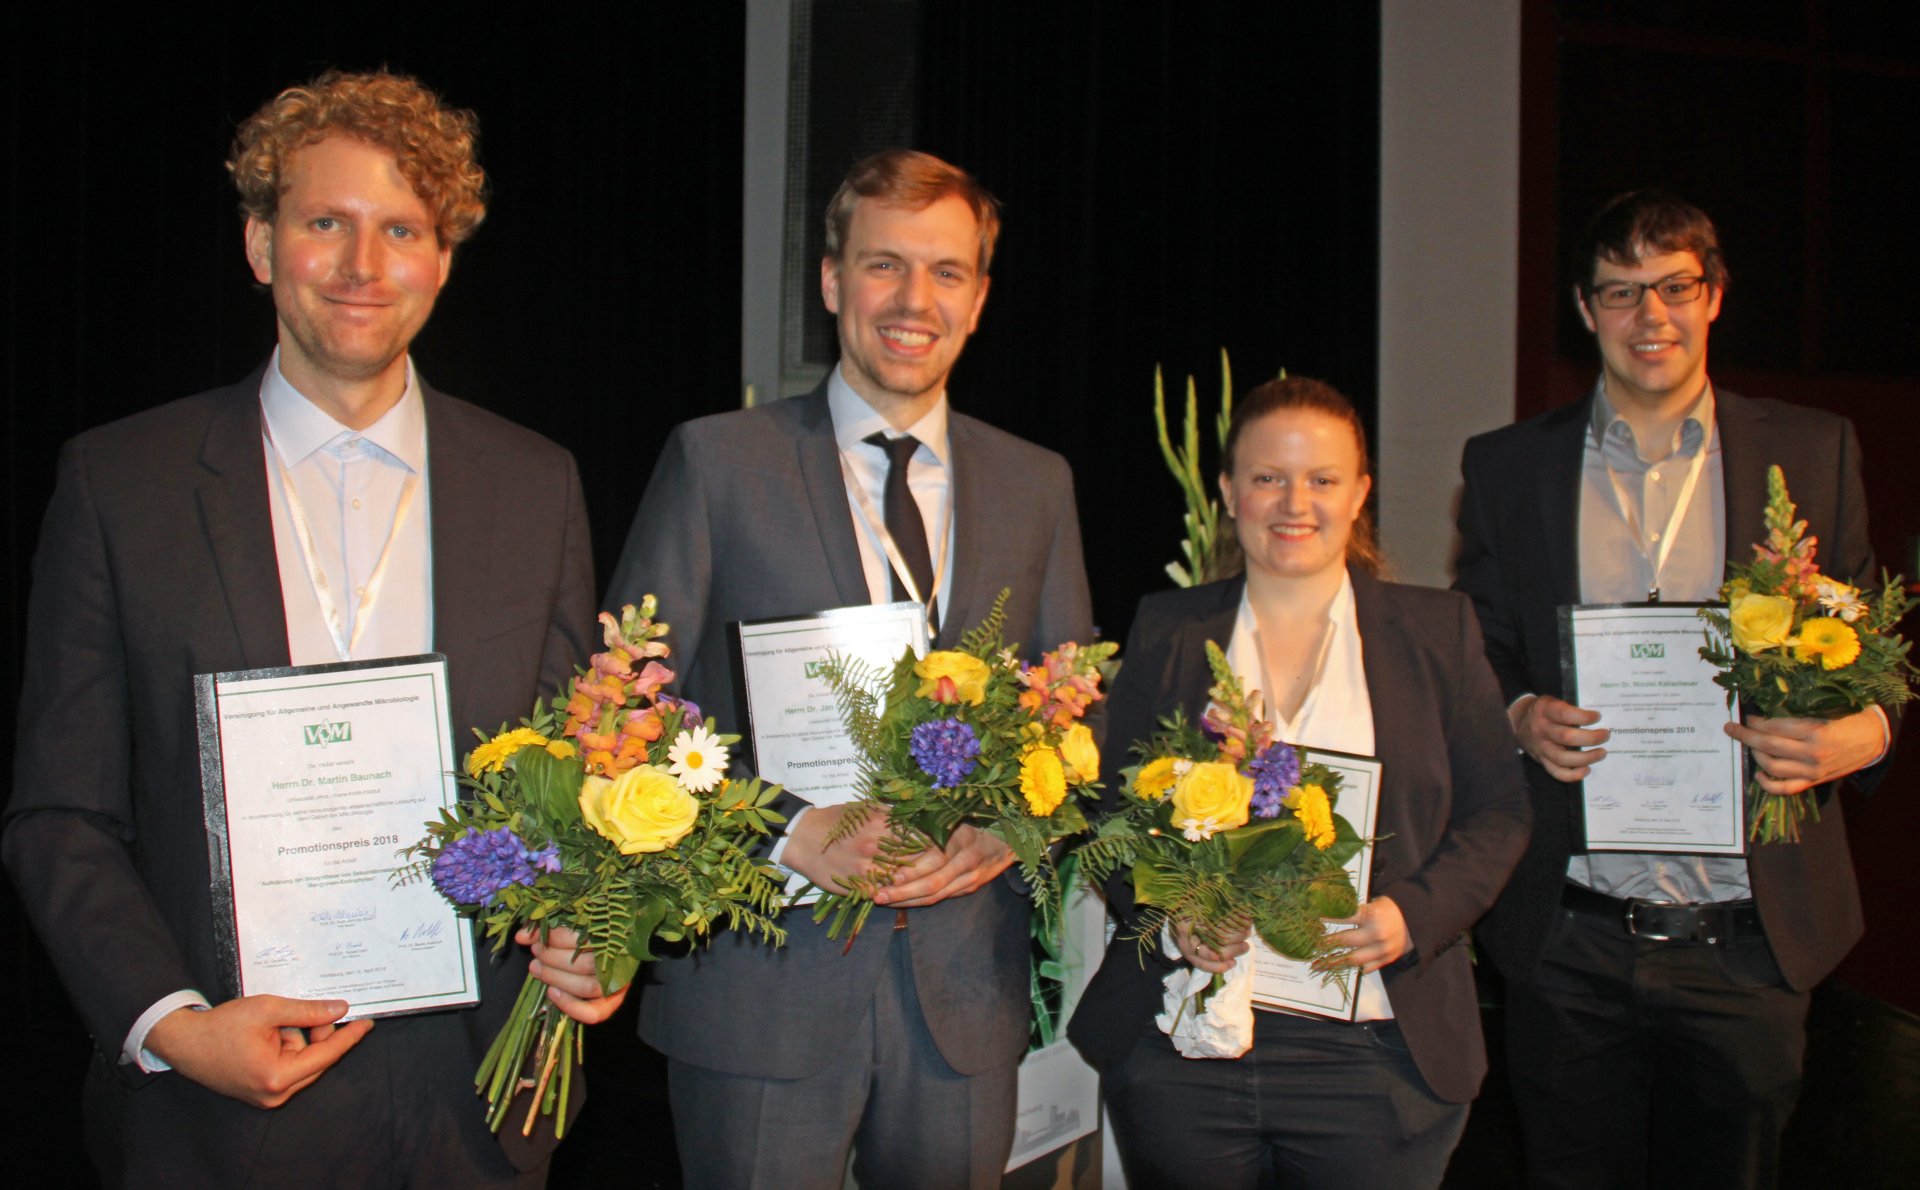 Greta Reintjes und die anderen Preisträger (v.l.n.r. Martin Baunach, Jan Gundlach, Greta Reintjes, Nicolai Kallscheuer) bei der Preisverleihung